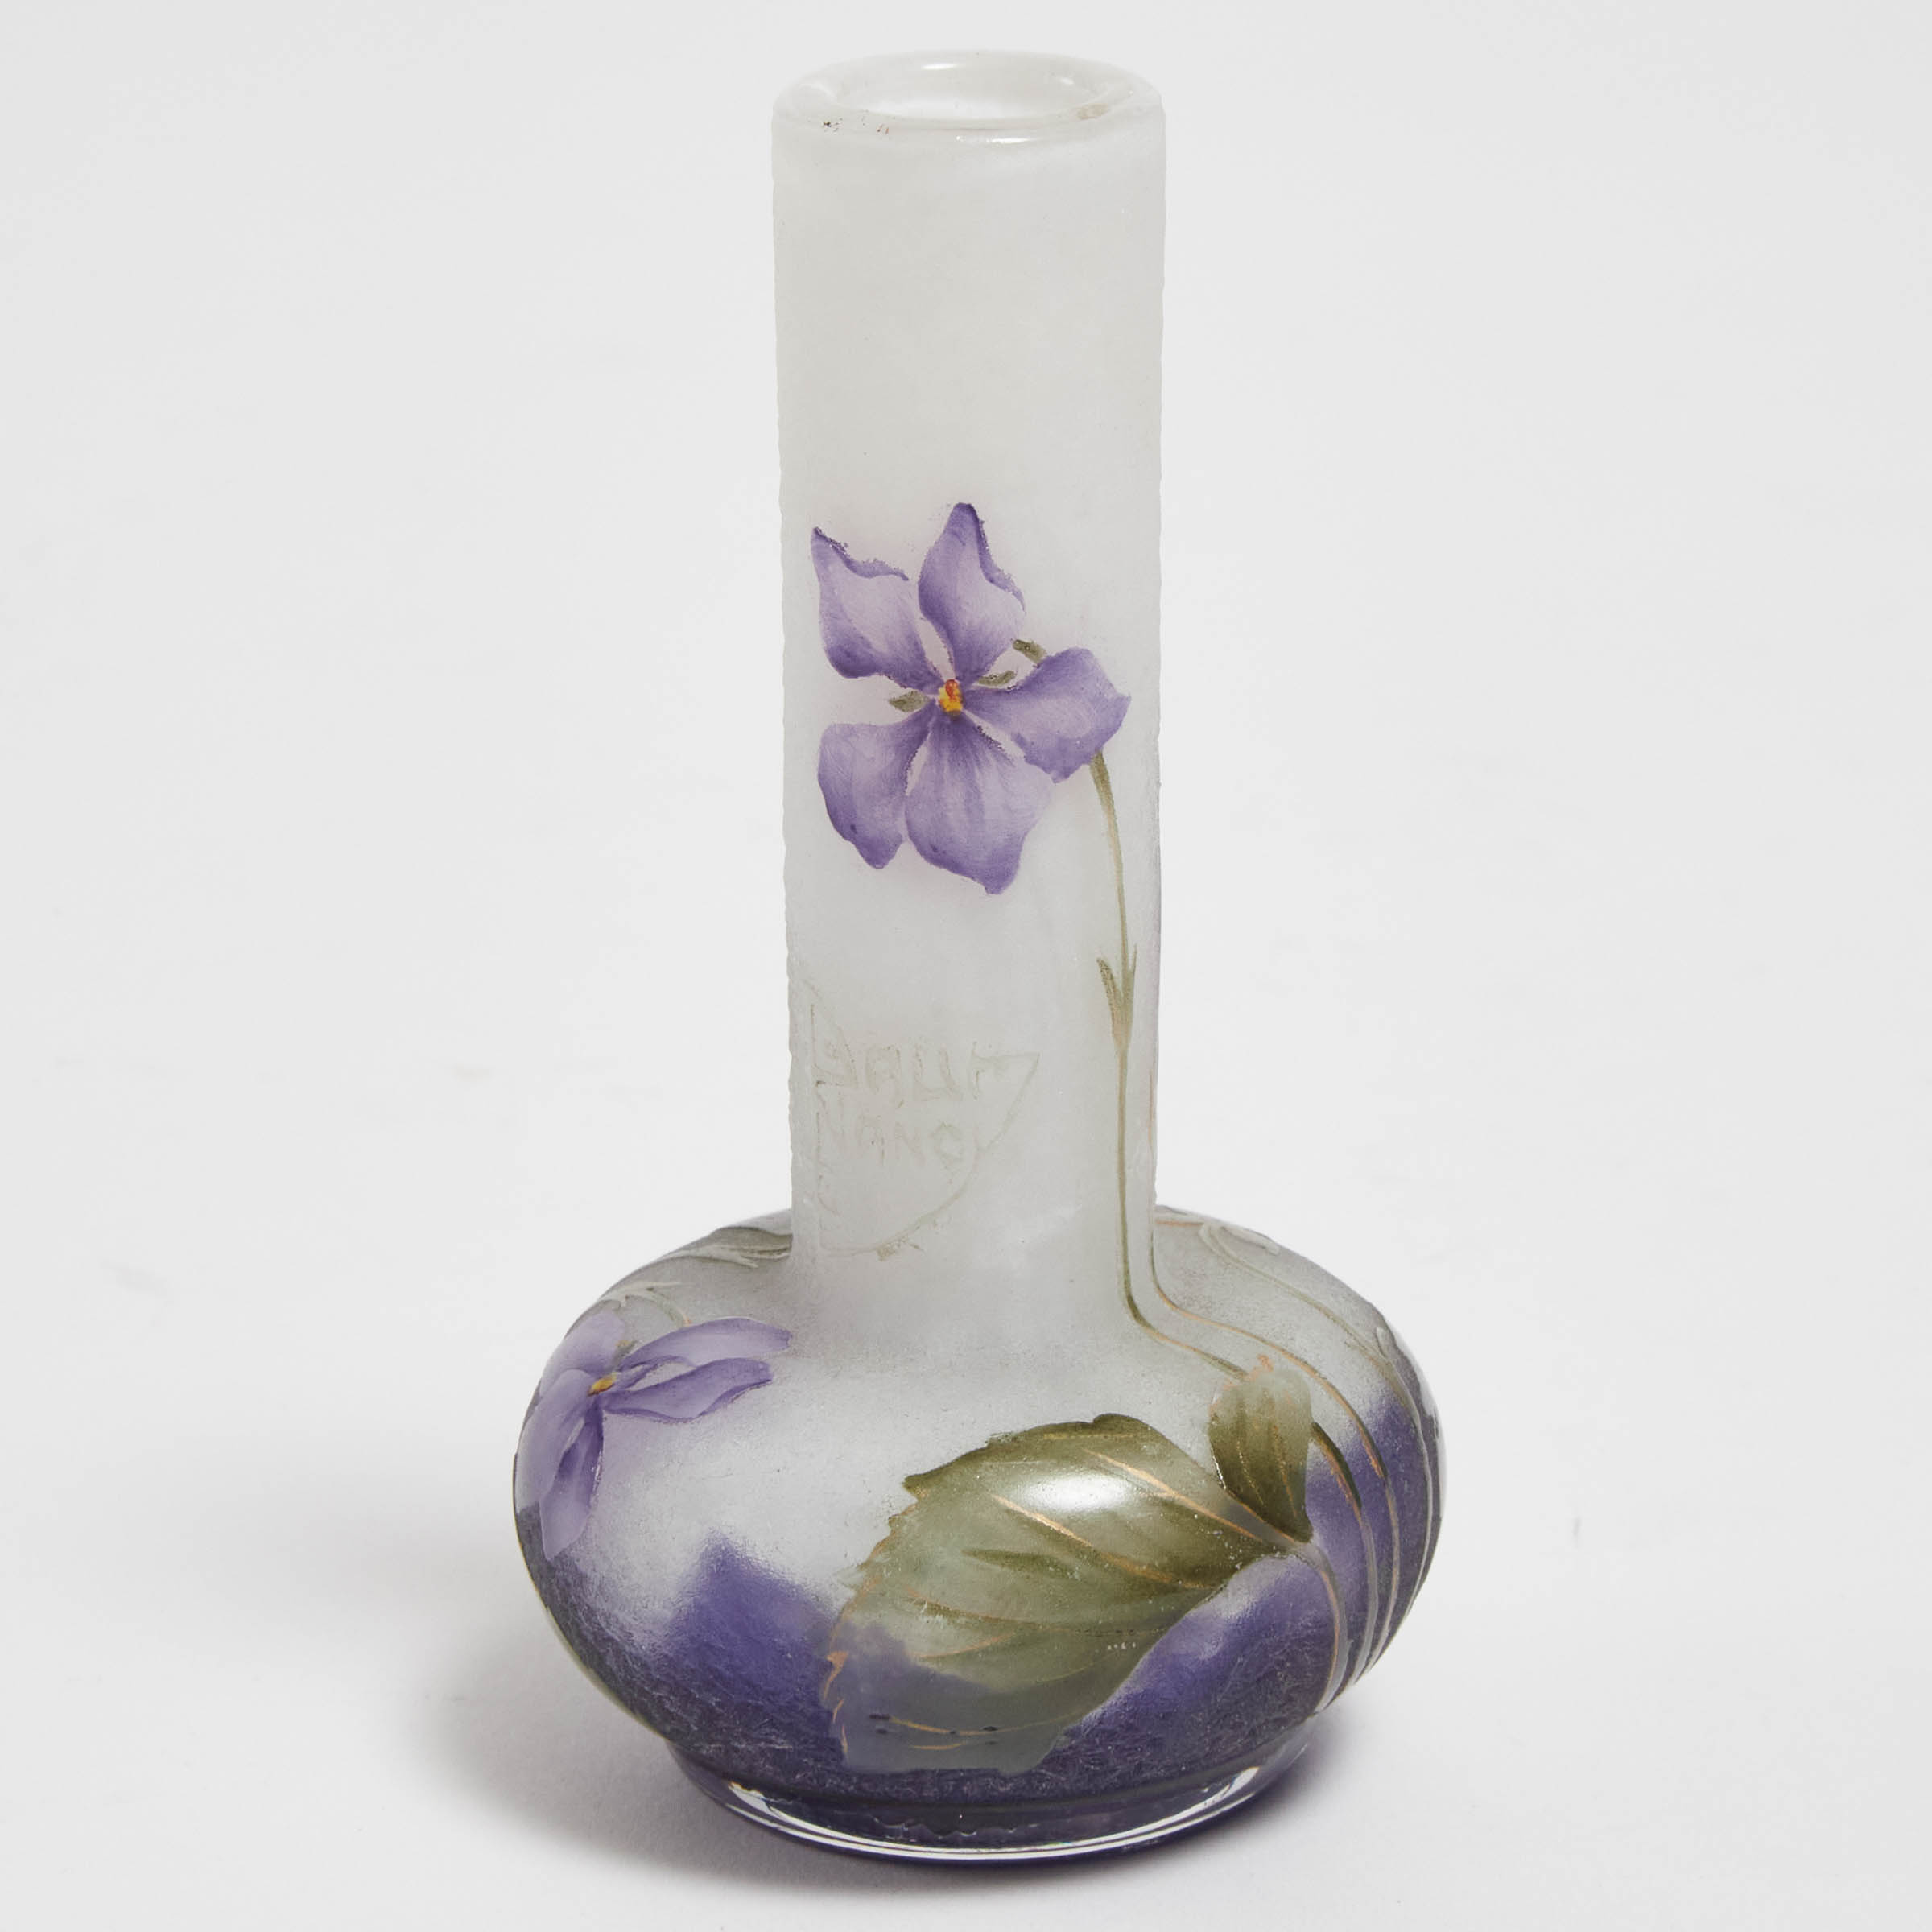 Daum Enameled Cameo Glass Violets Small